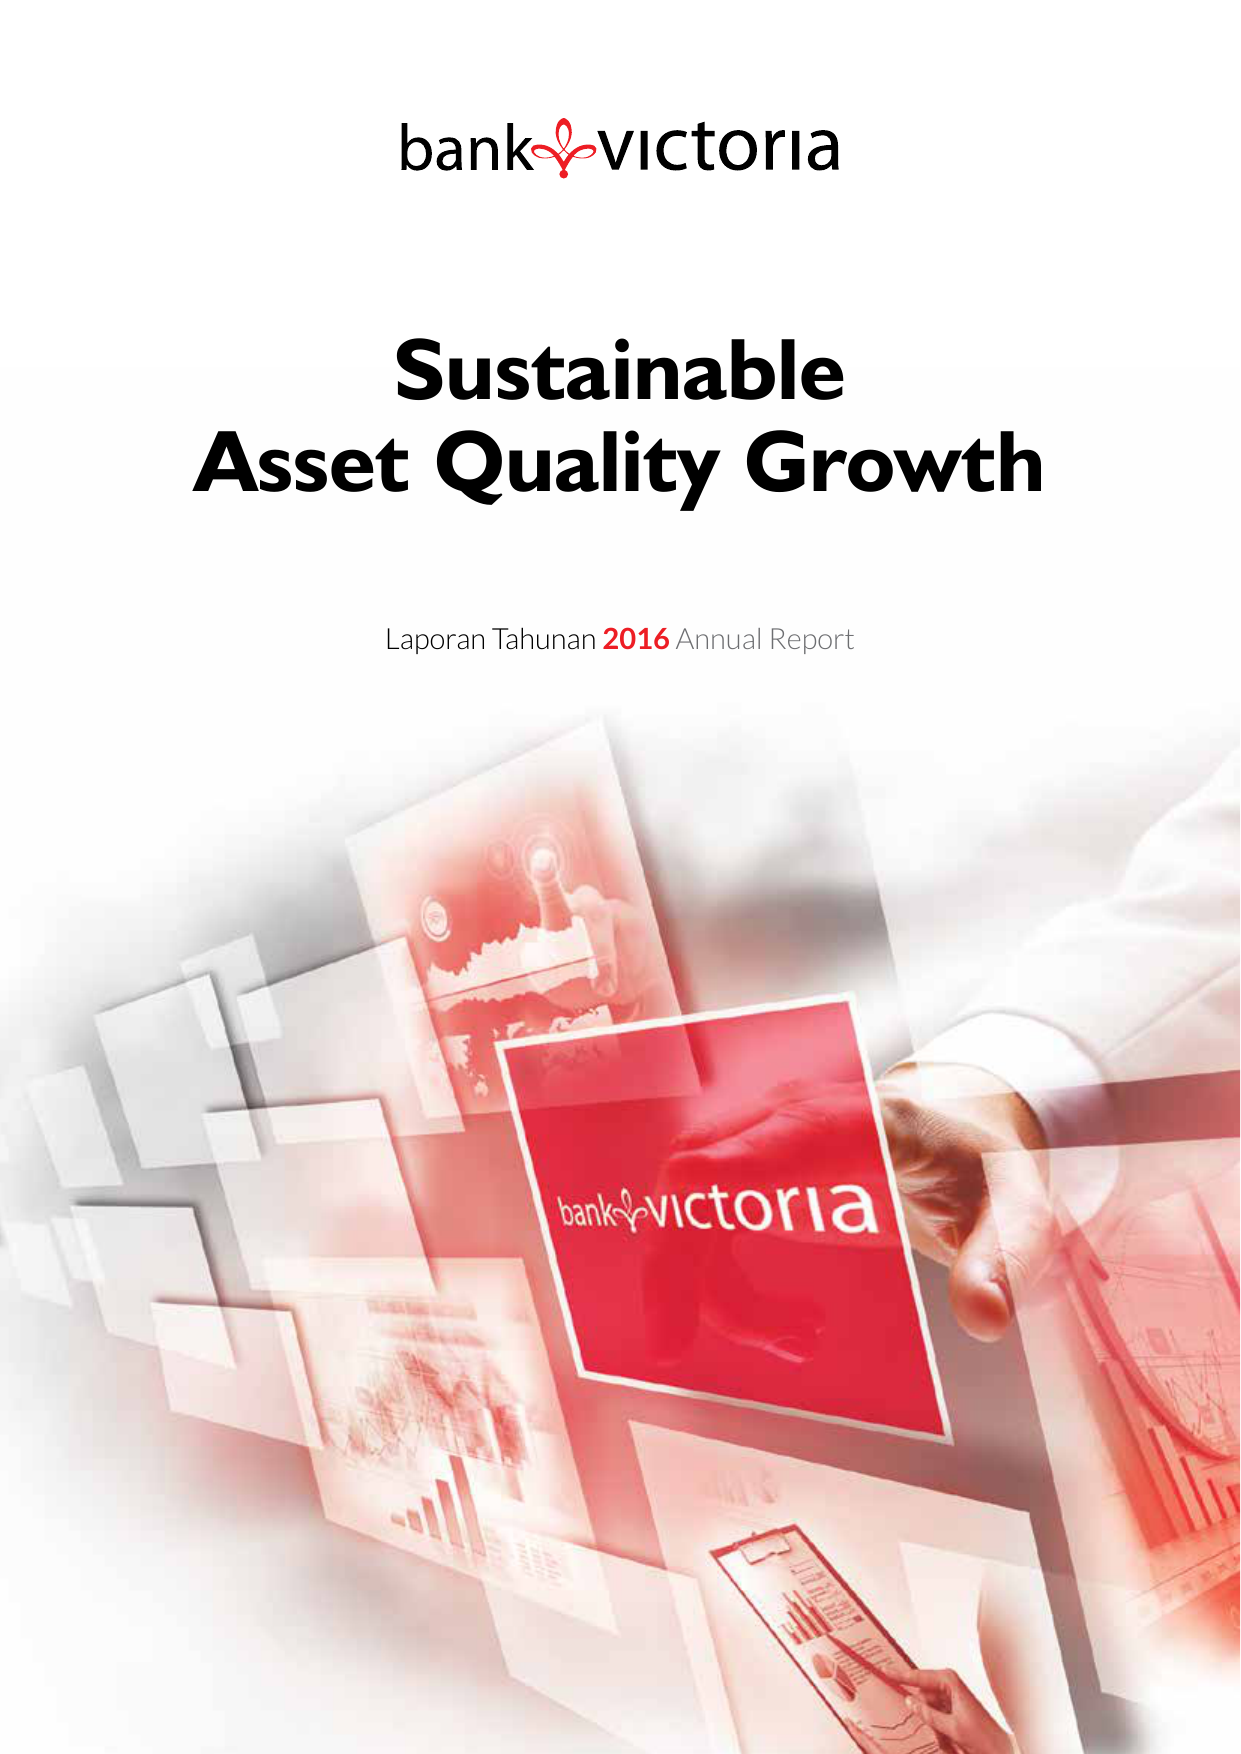 Sustainable Asset Quality Growth Laporan Tahunan 2016 Annual Report Sustainable Asset Quality Growth Pertumbuhan Kualitas Aset yang Berkelanjutan Sebagai